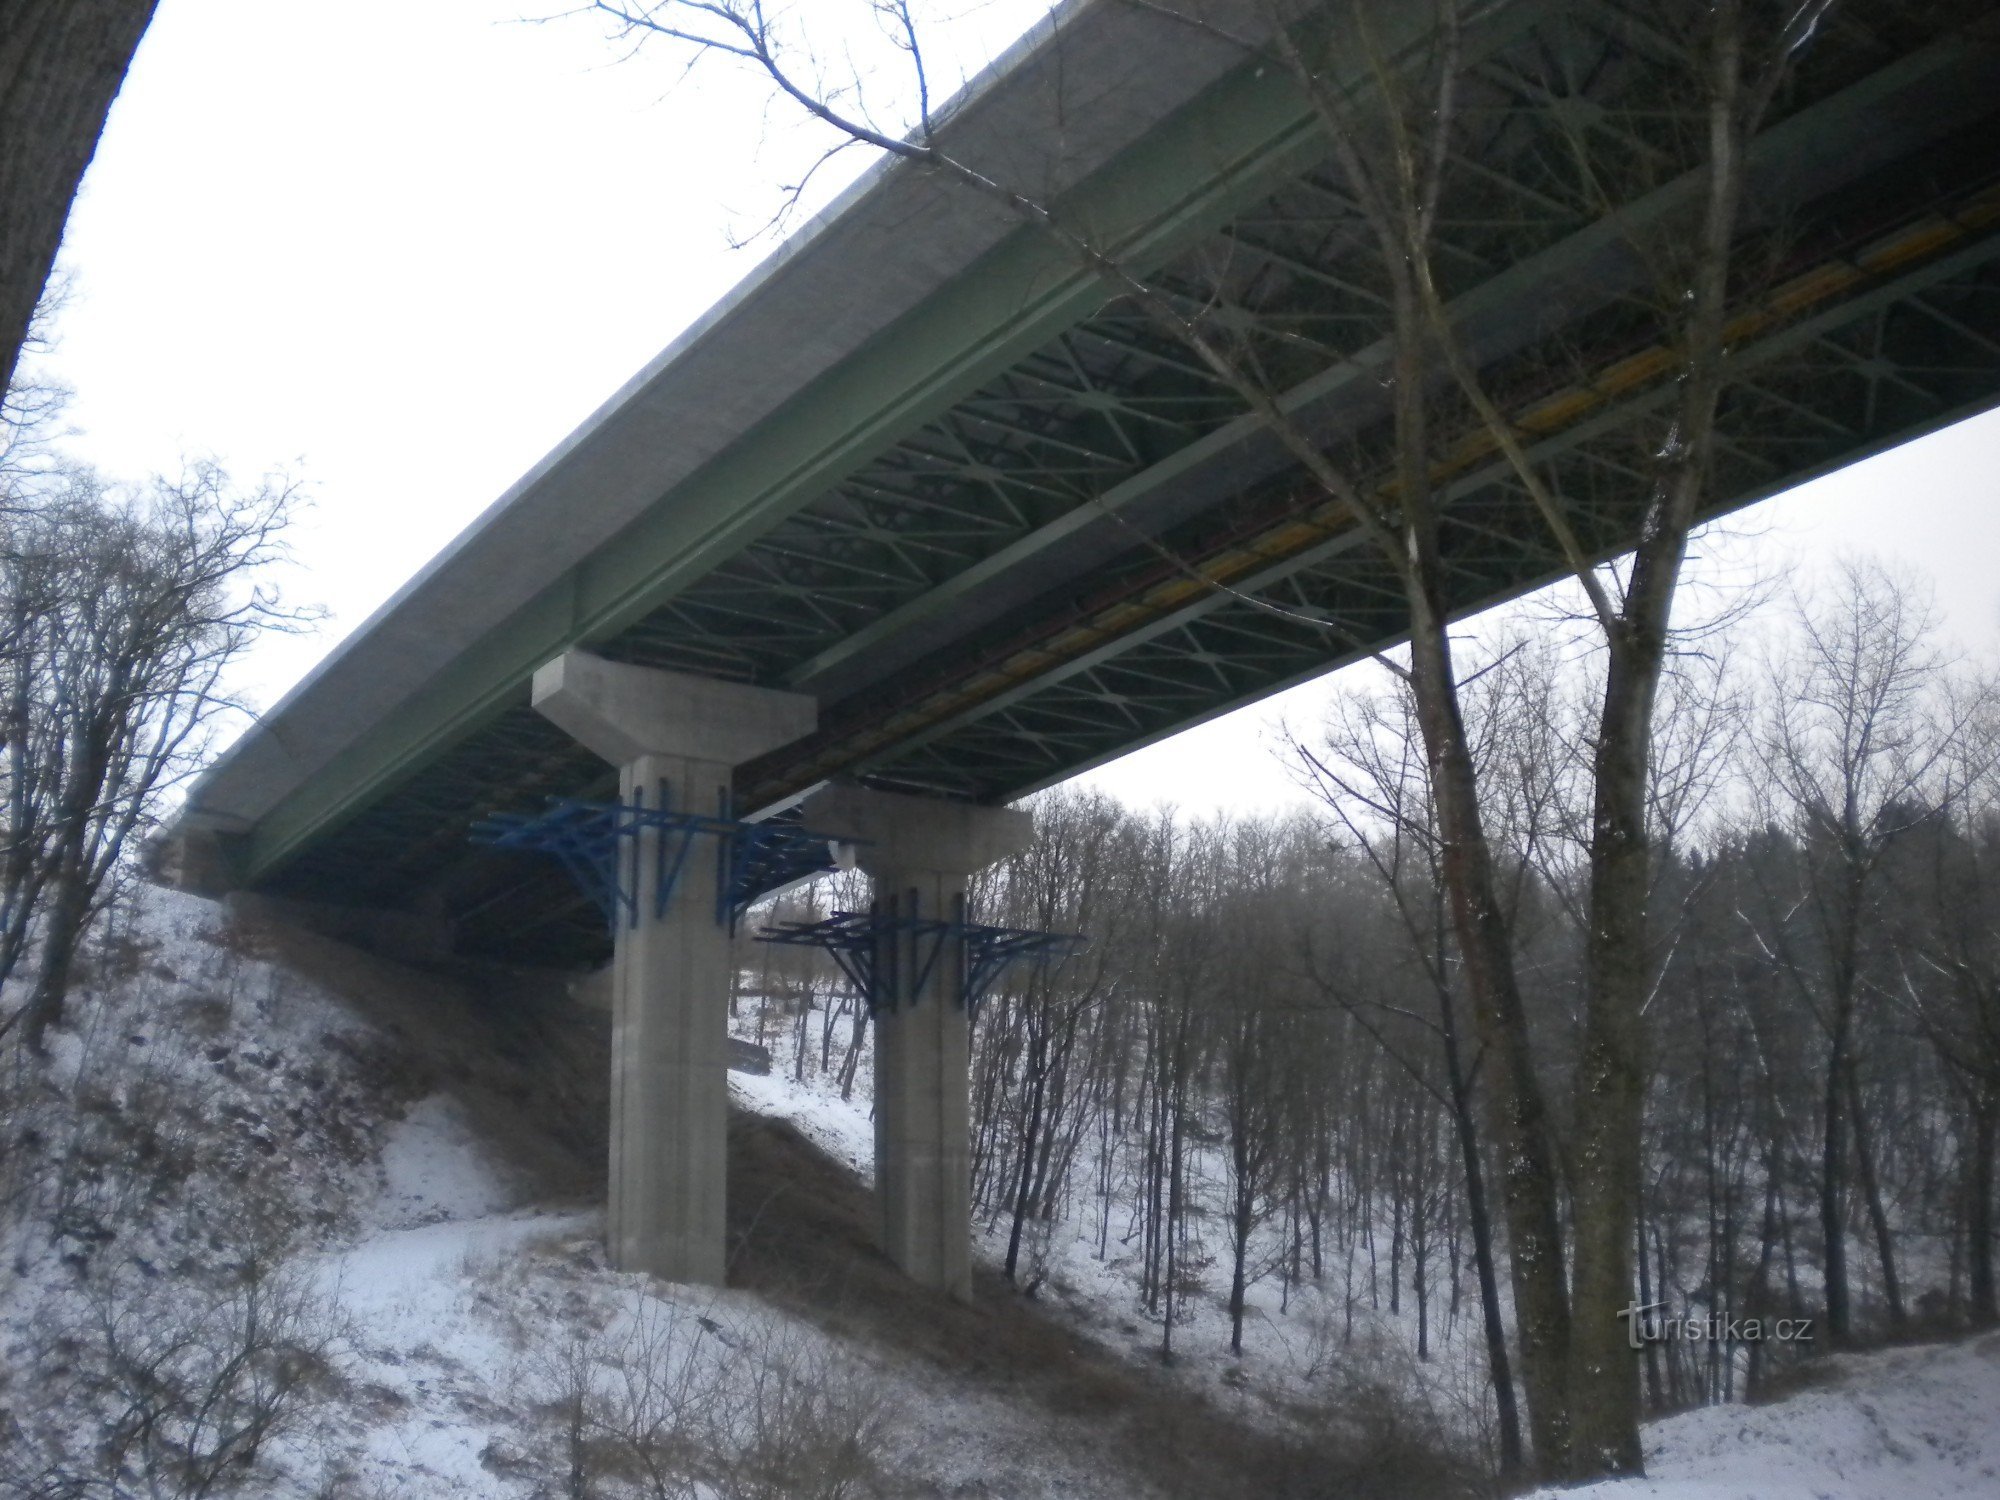 mały most autostradowy przez dolinę.